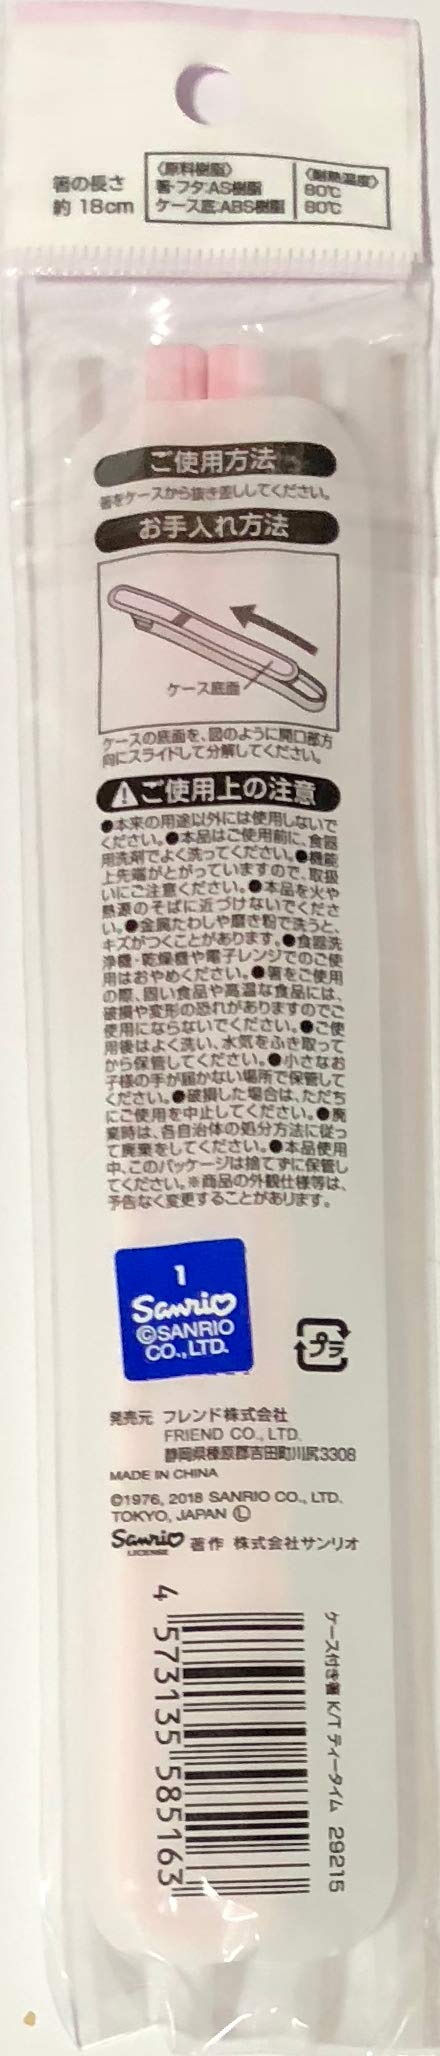  [AUSTRALIA] - Sanrio Hello Kitty Plasticks Chopsticks 18 cm with Sliding Case Kitchen (Tea Time)